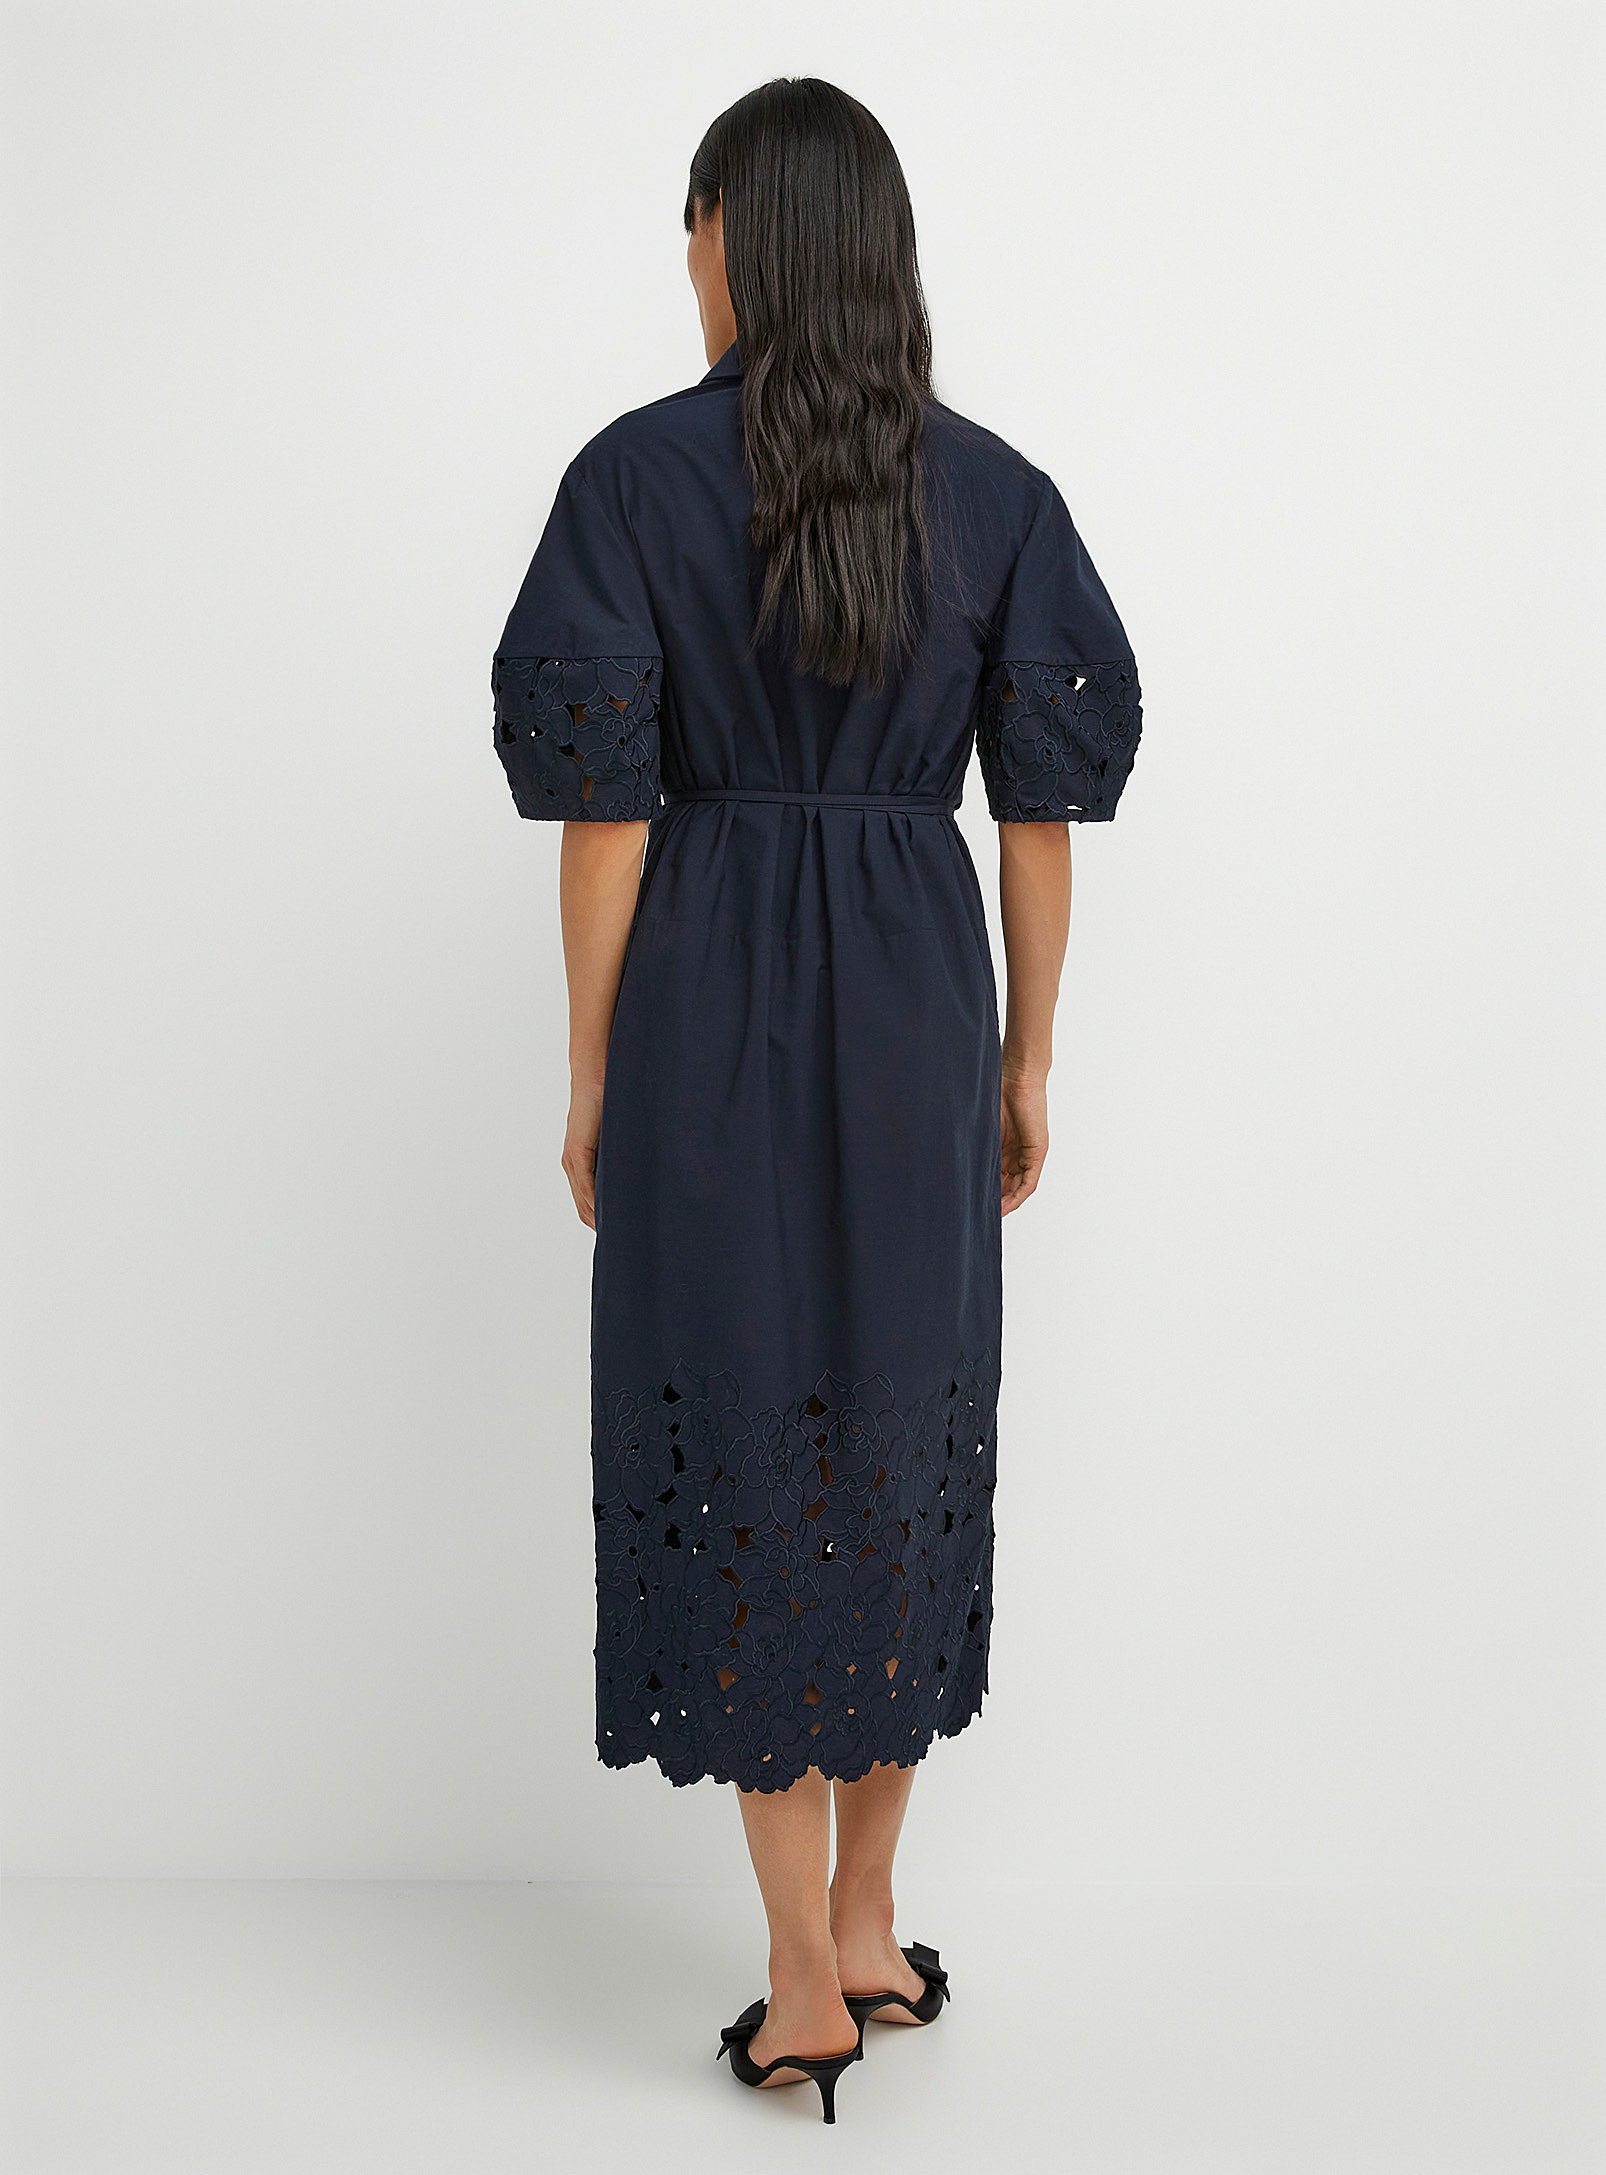 Erdem - La robe chemise dentelle ajourée